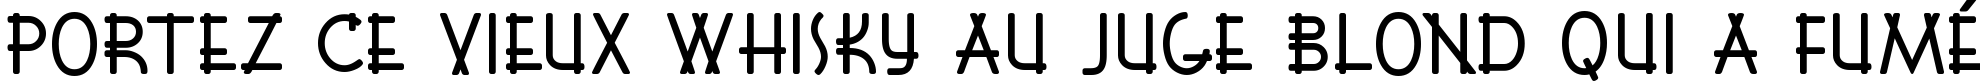 Пример написания шрифтом Font Shui текста на французском